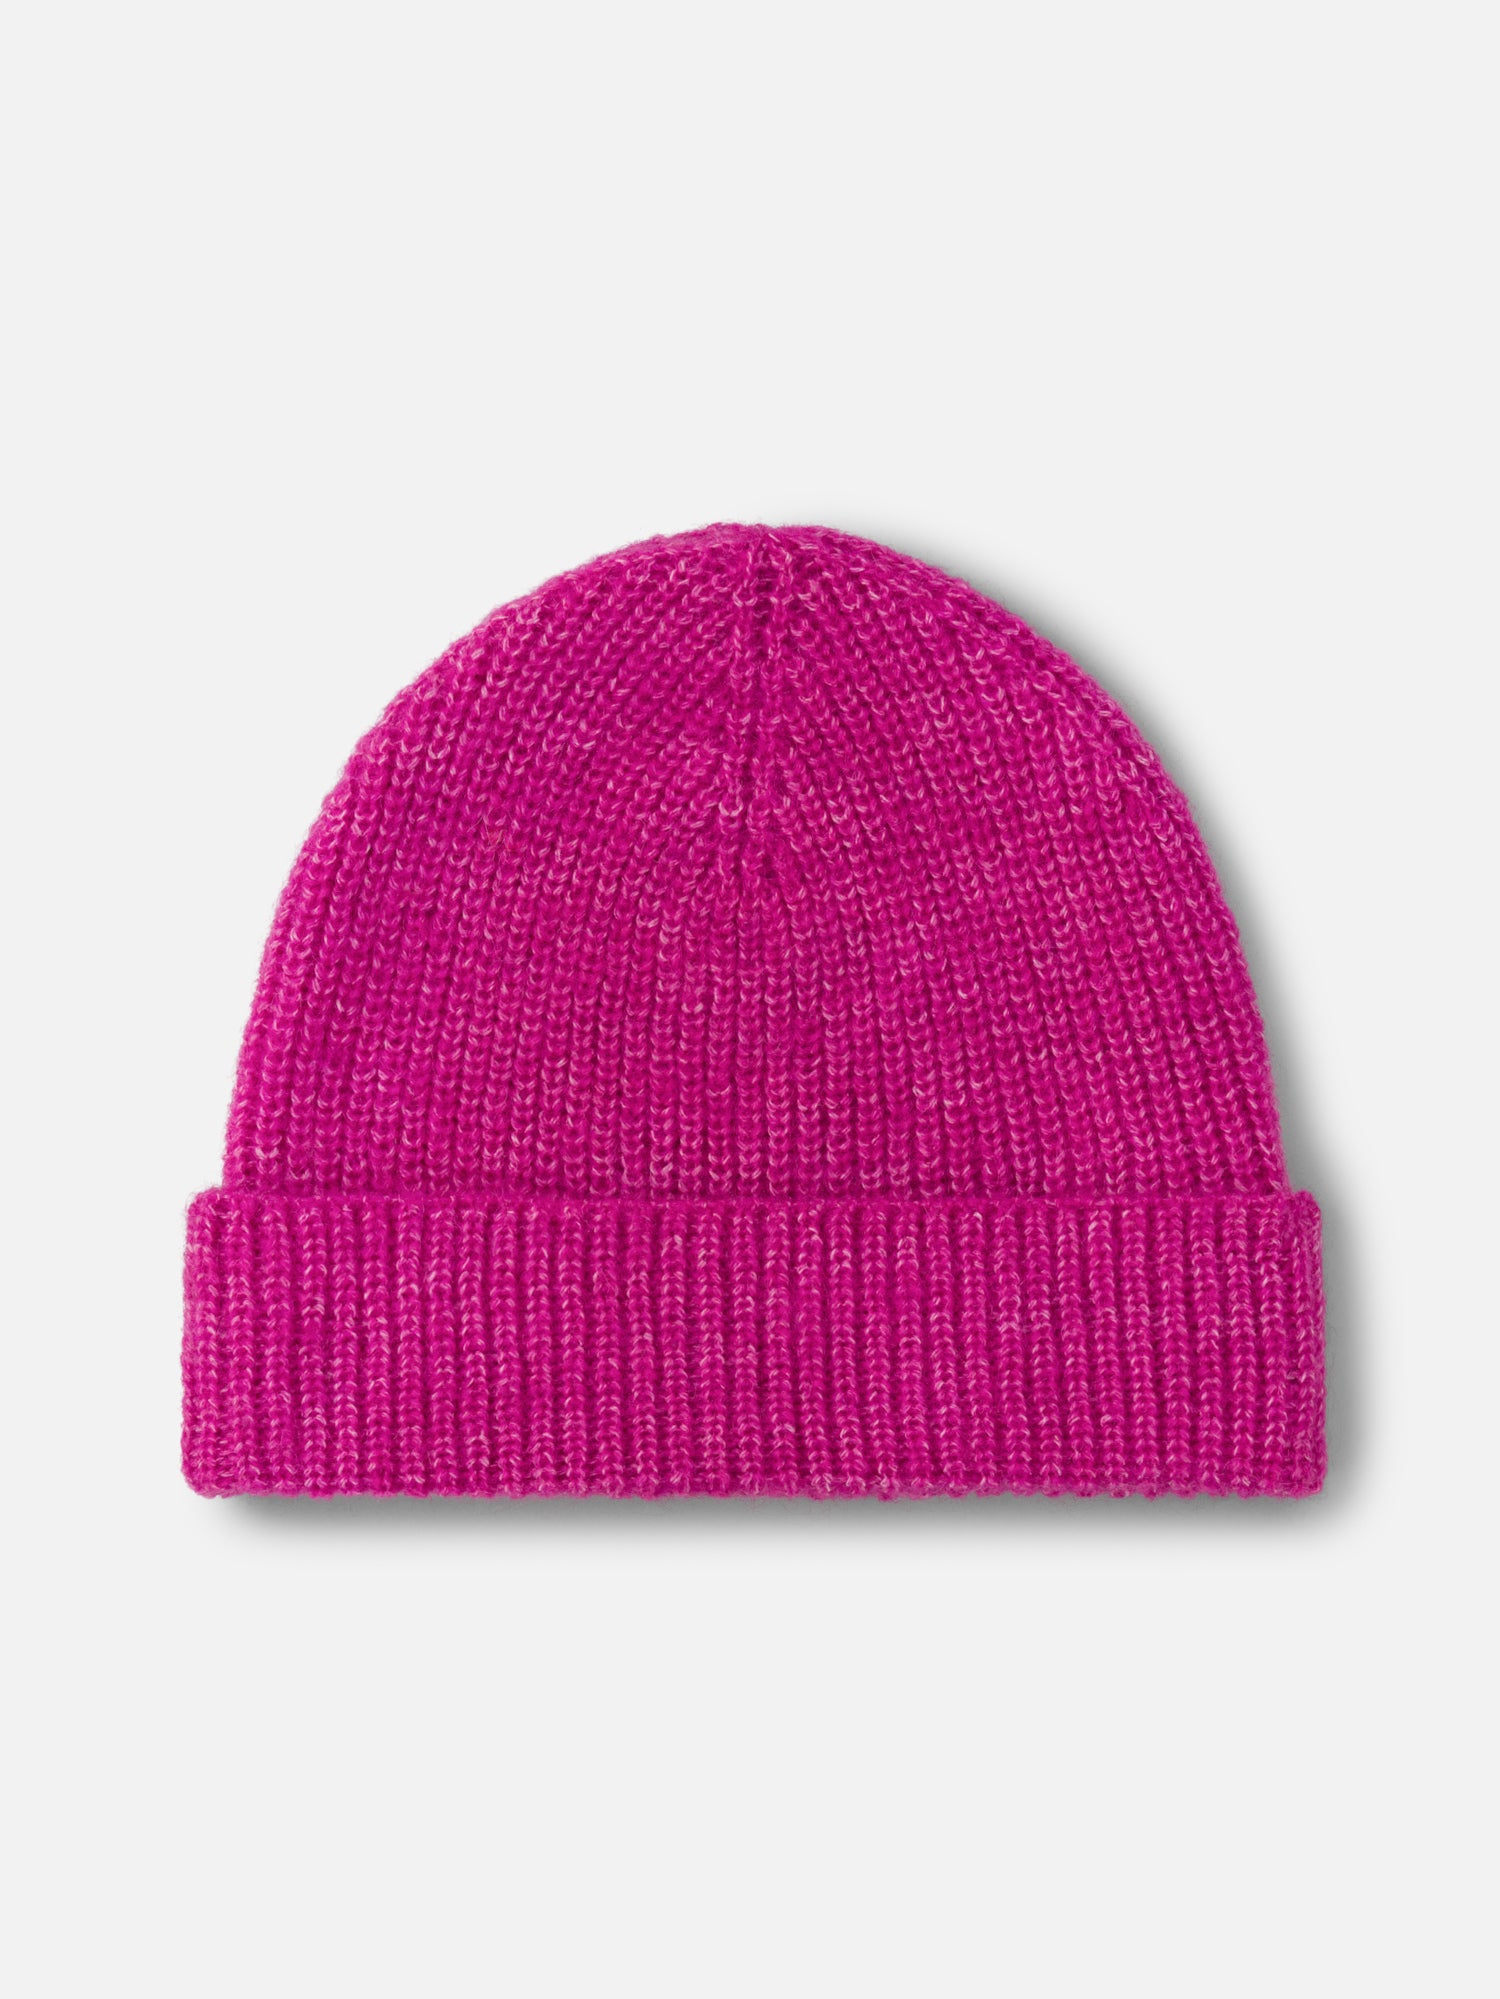 Keily Mercerised Wool Knitted Beanie - Magenta Pink